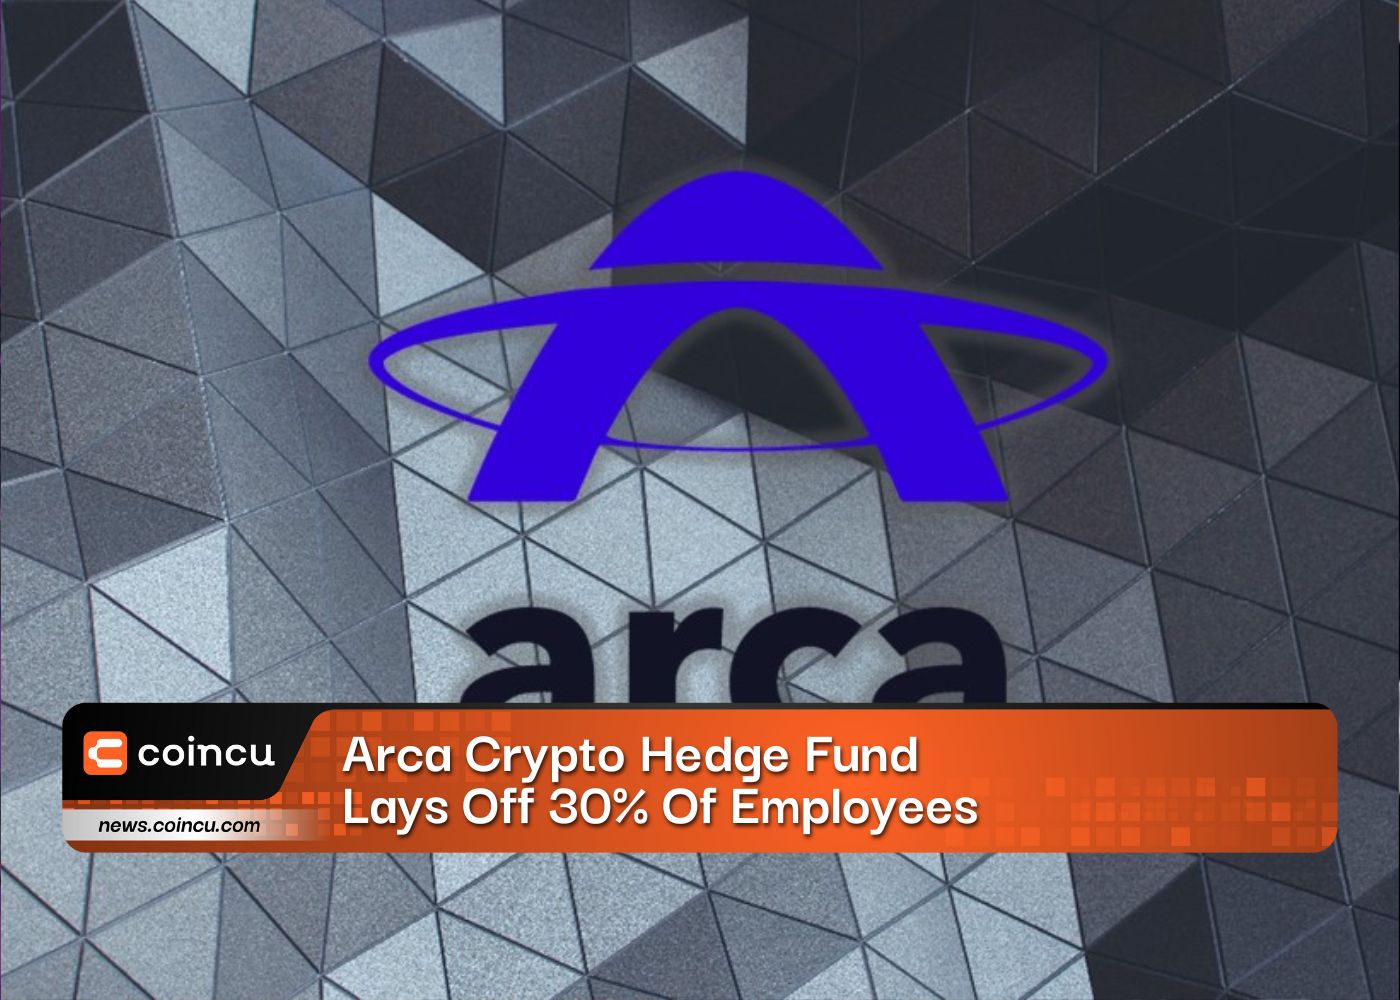 Arca Crypto Hedge Fund licencie 30% de ses employés